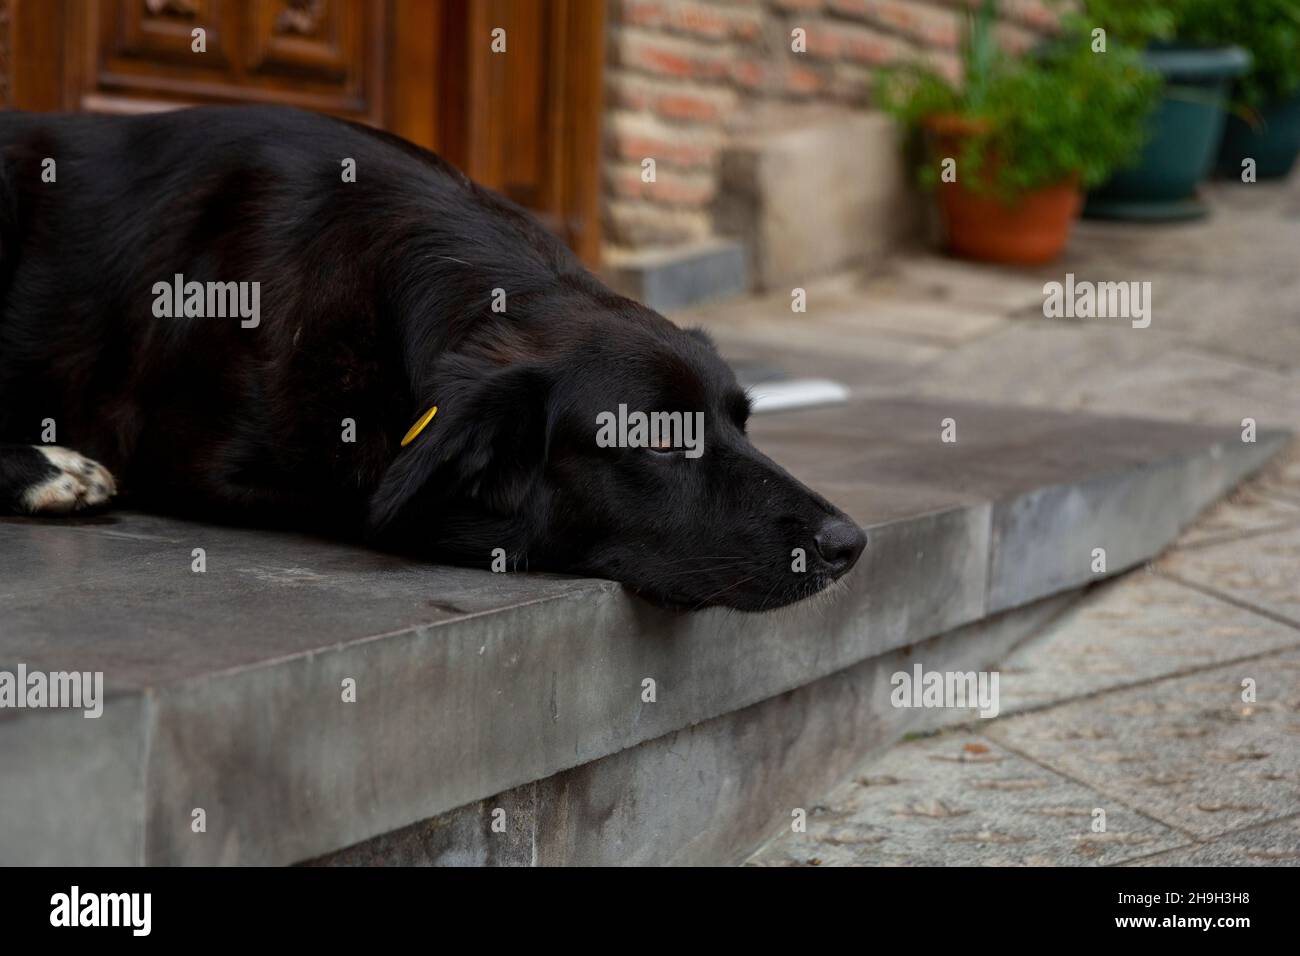 Ein großer schwarzer Hund mit weißen Pfoten liegt auf den Stufen des  Eingangs. Sieht traurig aus. Heimatlose Hunde in den Straßen von Tiflis.  Sterilisierte und gechipte Hunde Stockfotografie - Alamy